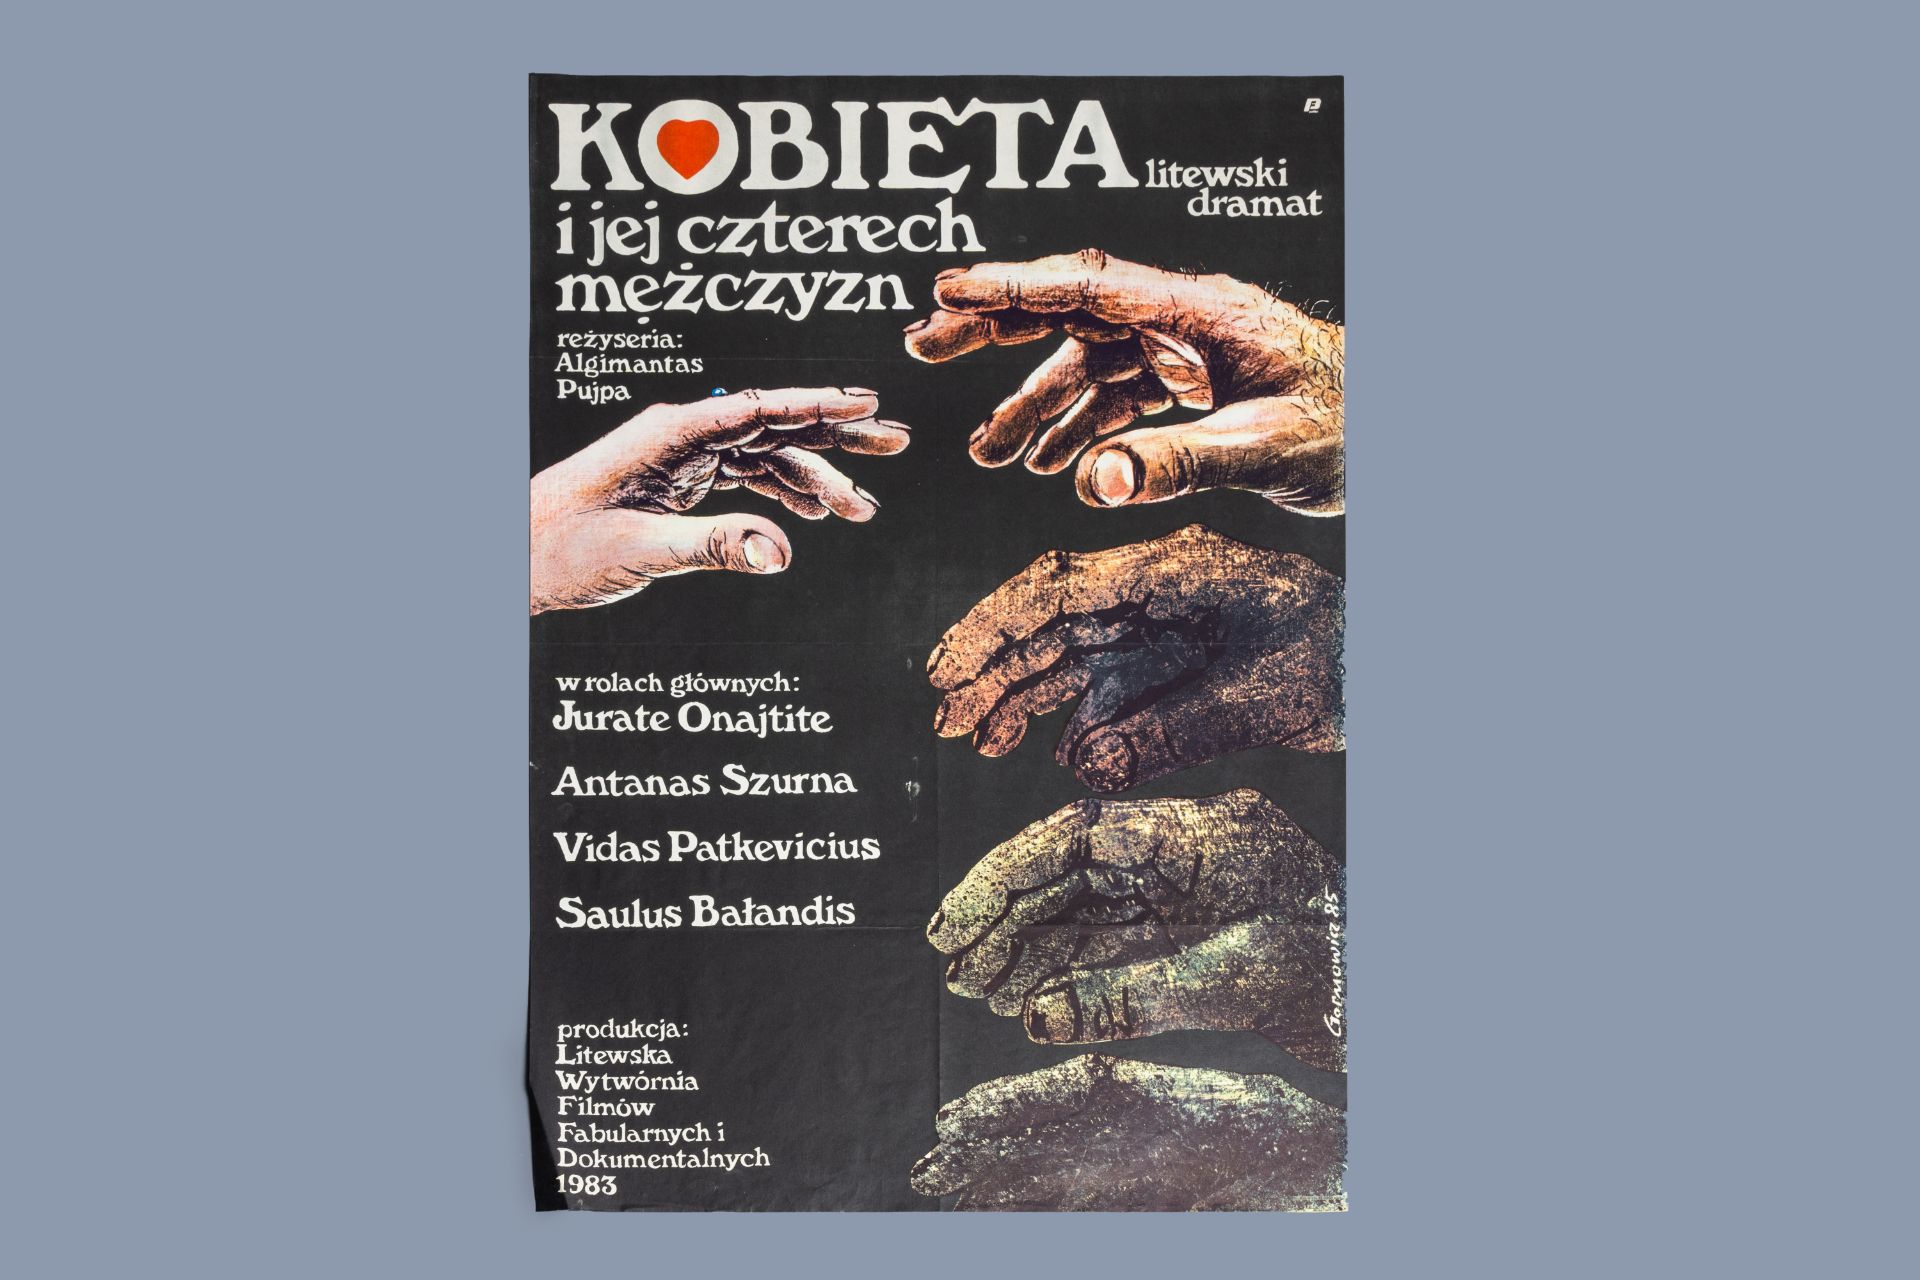 Zygmunt Gornowicz (1949): 'Kobieta i jej czterech mezczyzn' (The woman and her four man), movie post - Image 2 of 3